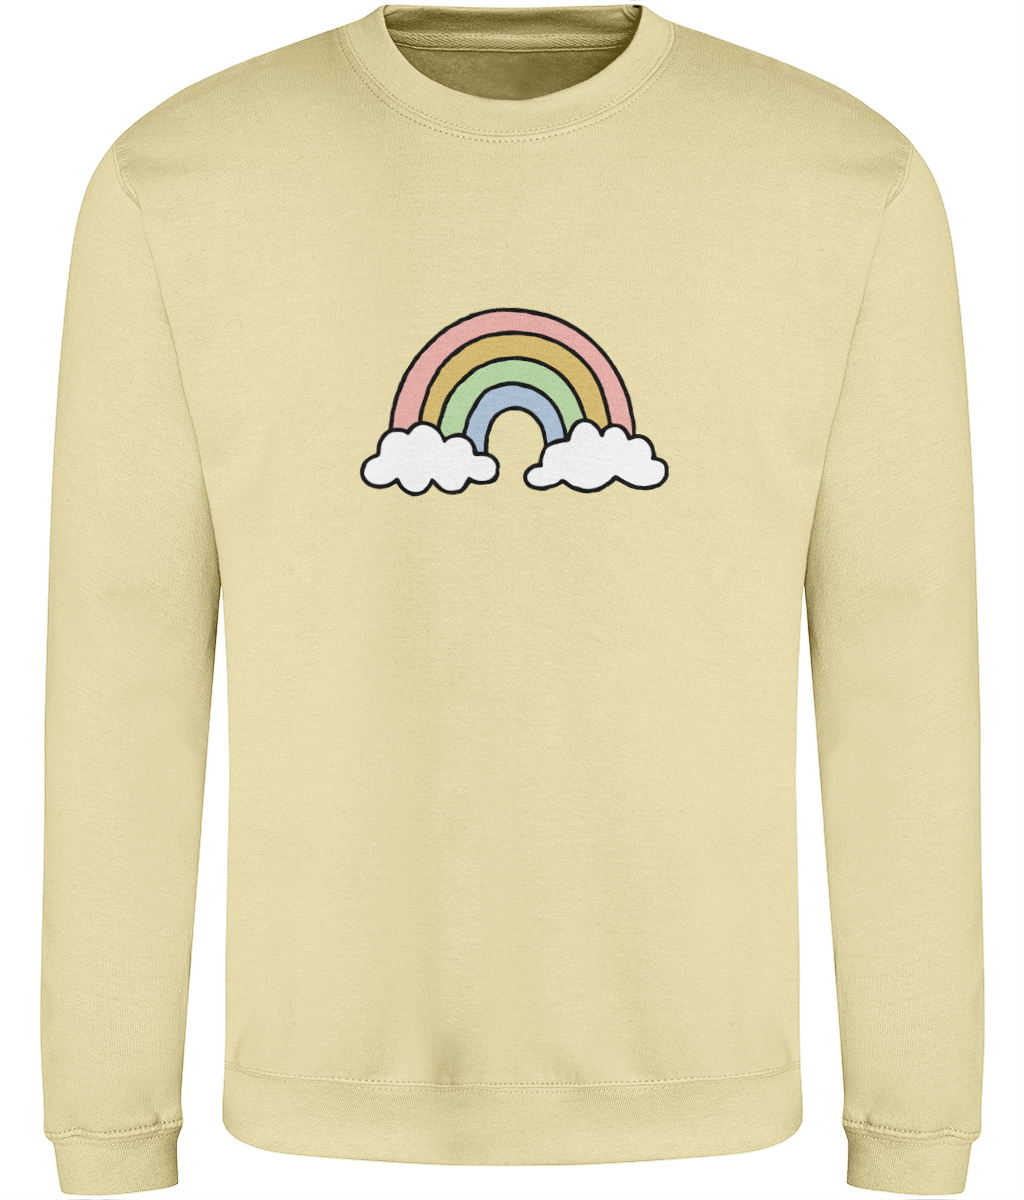 Rainbow - Adult Sweatshirt - Multi Colour Options